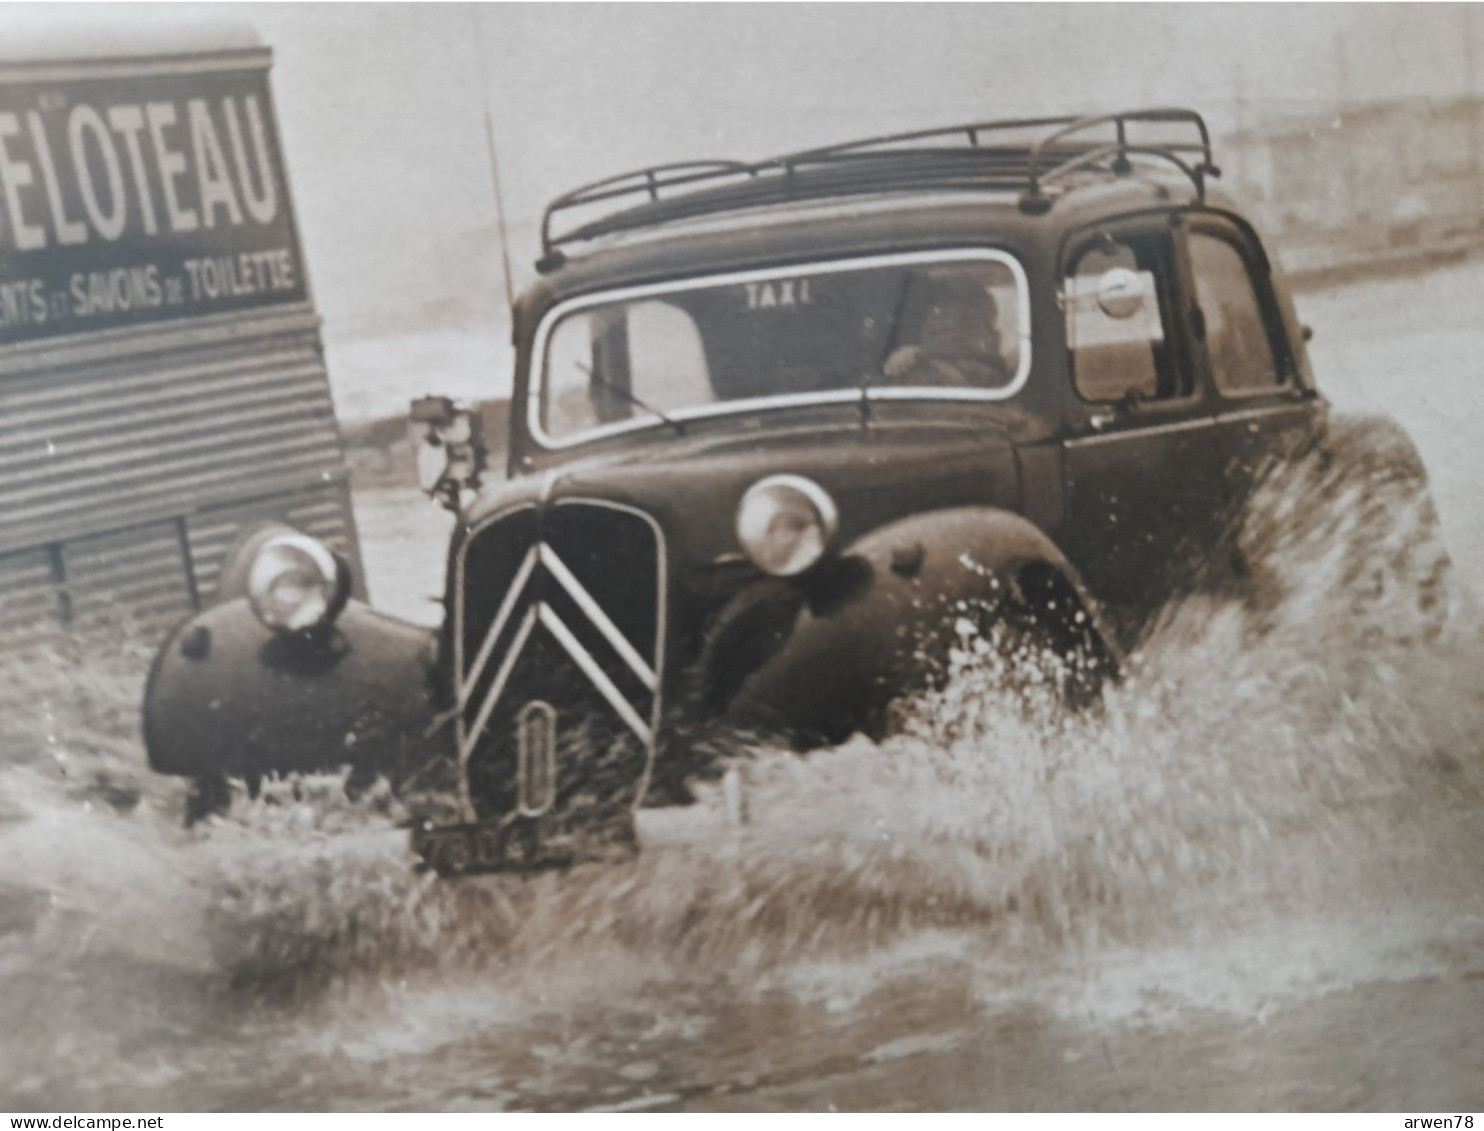 Photo MARSEILLE CANEBIERE INONDATION CITROEN H SAVON GABELOTEAU  TAXI TRACTION AVANT 1959 - Auto's